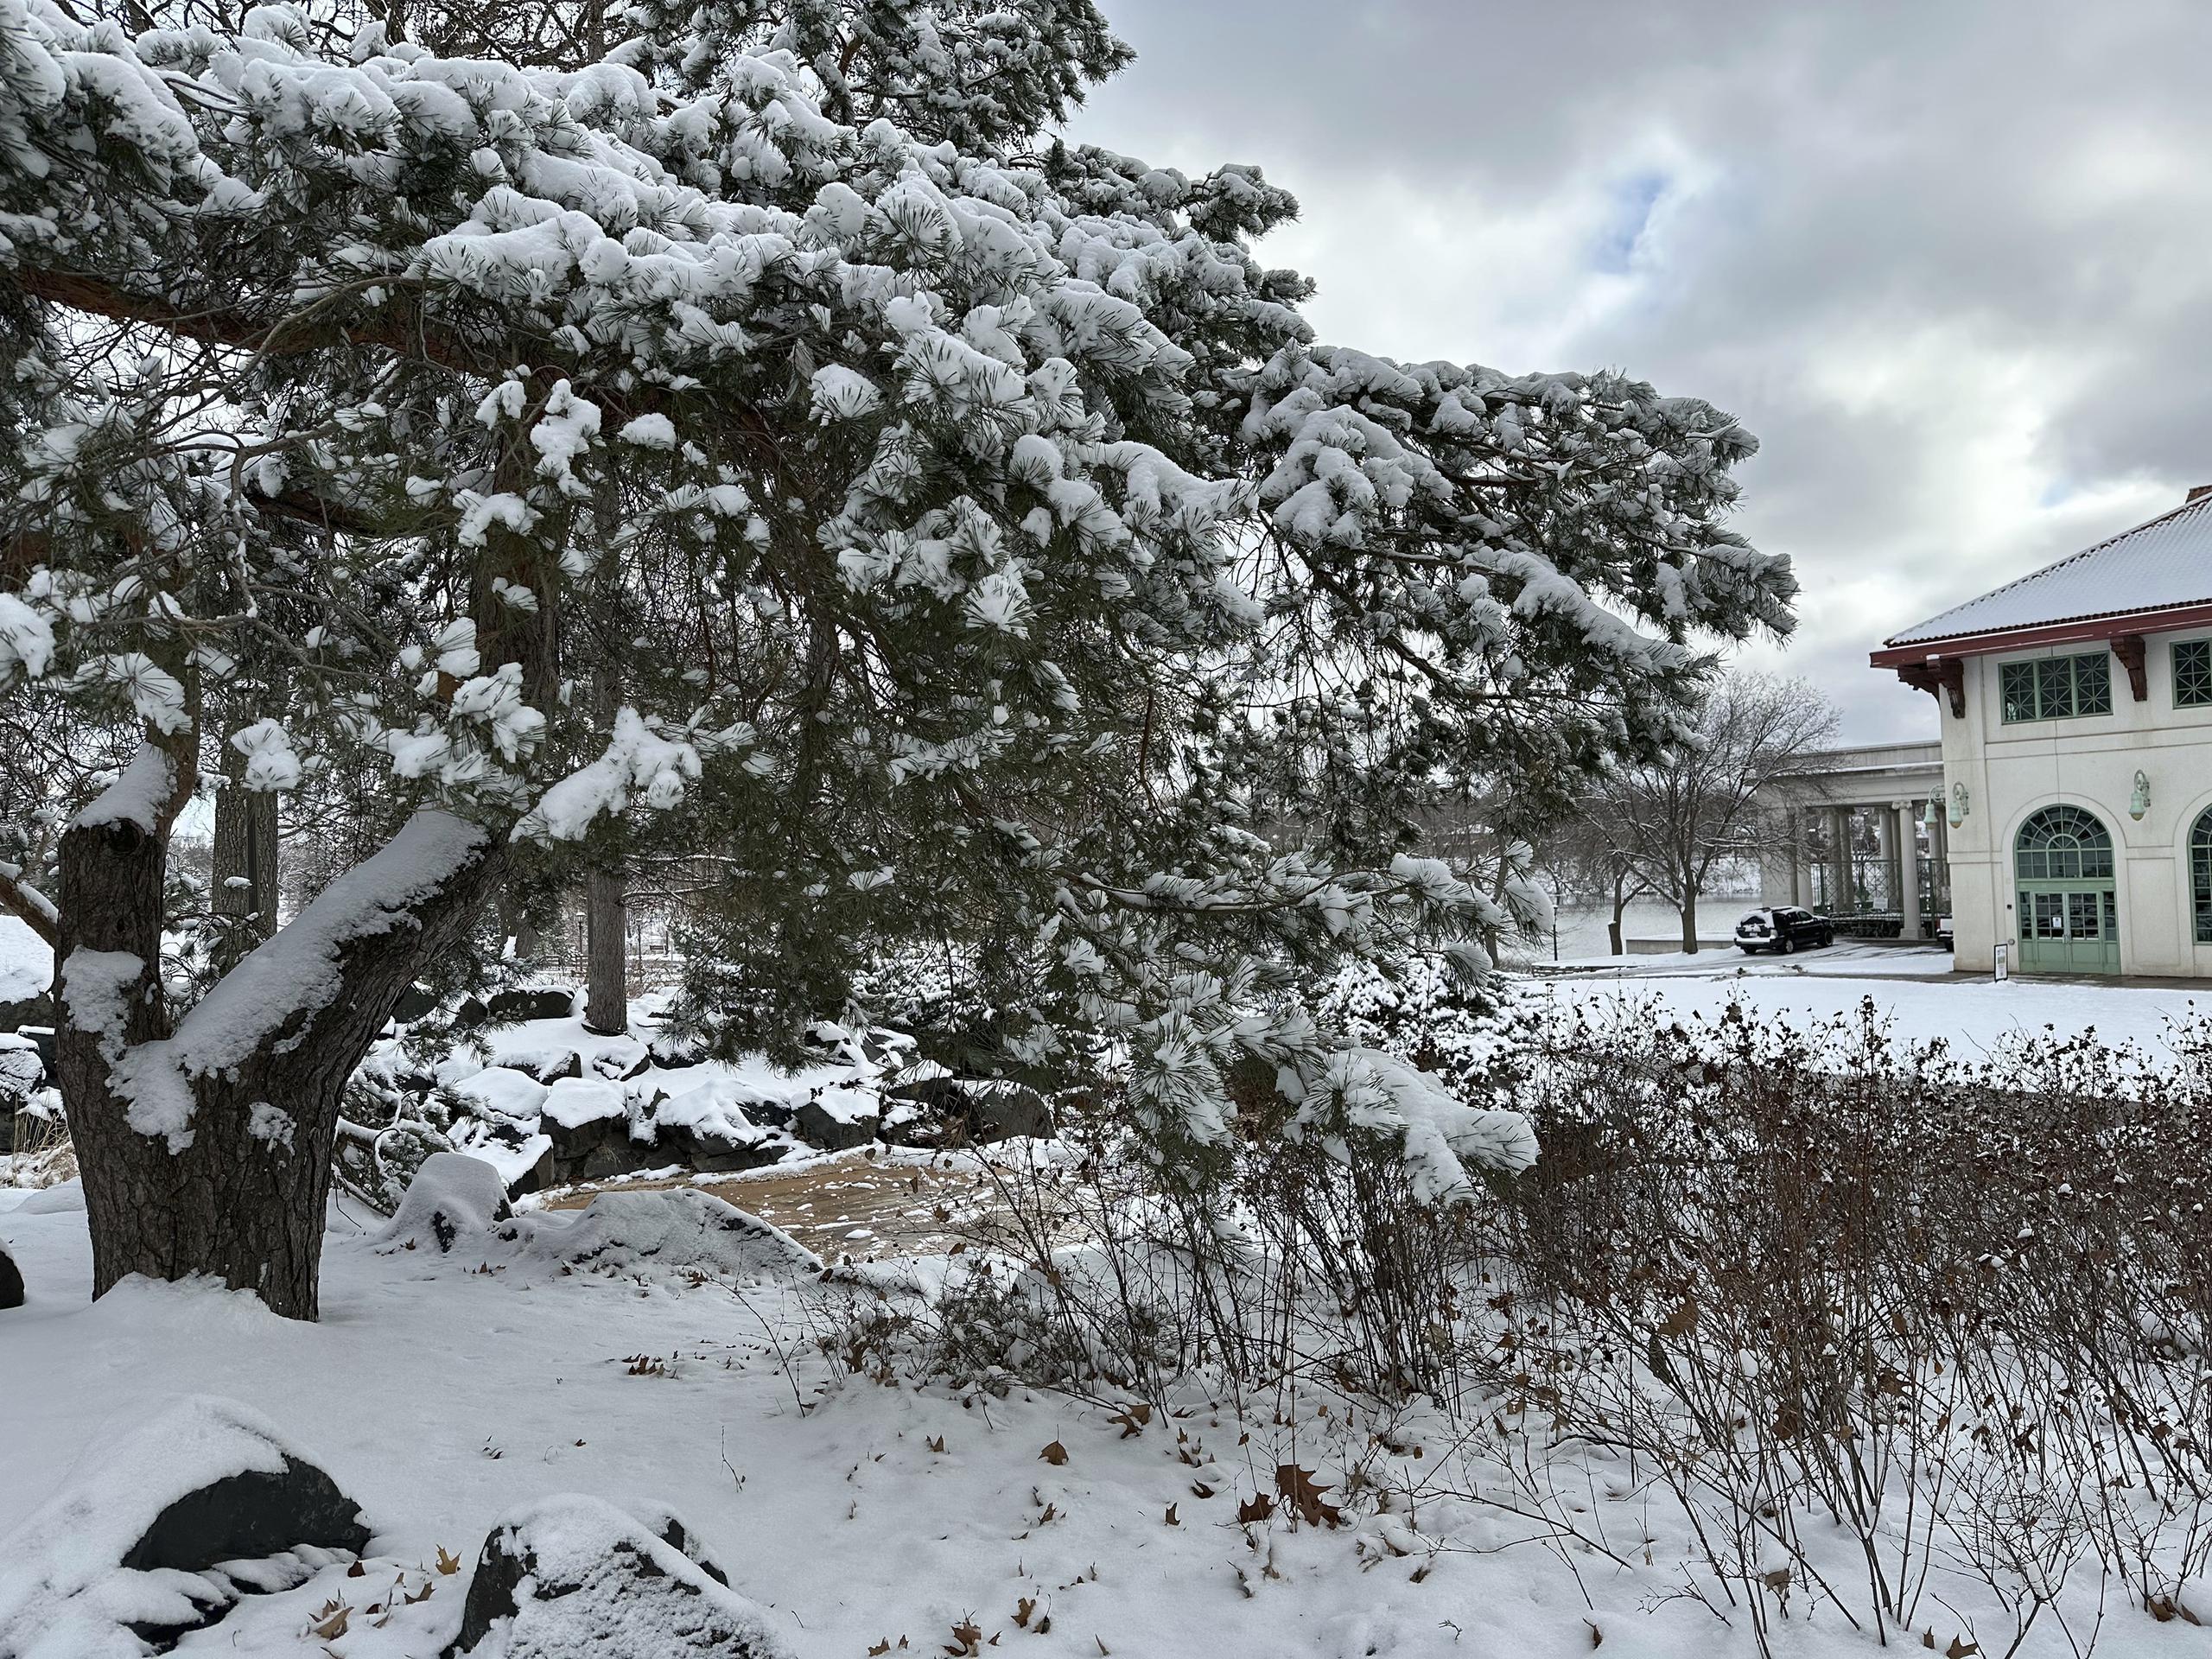 En Maine, el Servicio Meteorológico Nacional advirtió de riesgos en los desplazamientos debido a una creciente capa de hielo sobre la nieve y el granizo ya caídos.